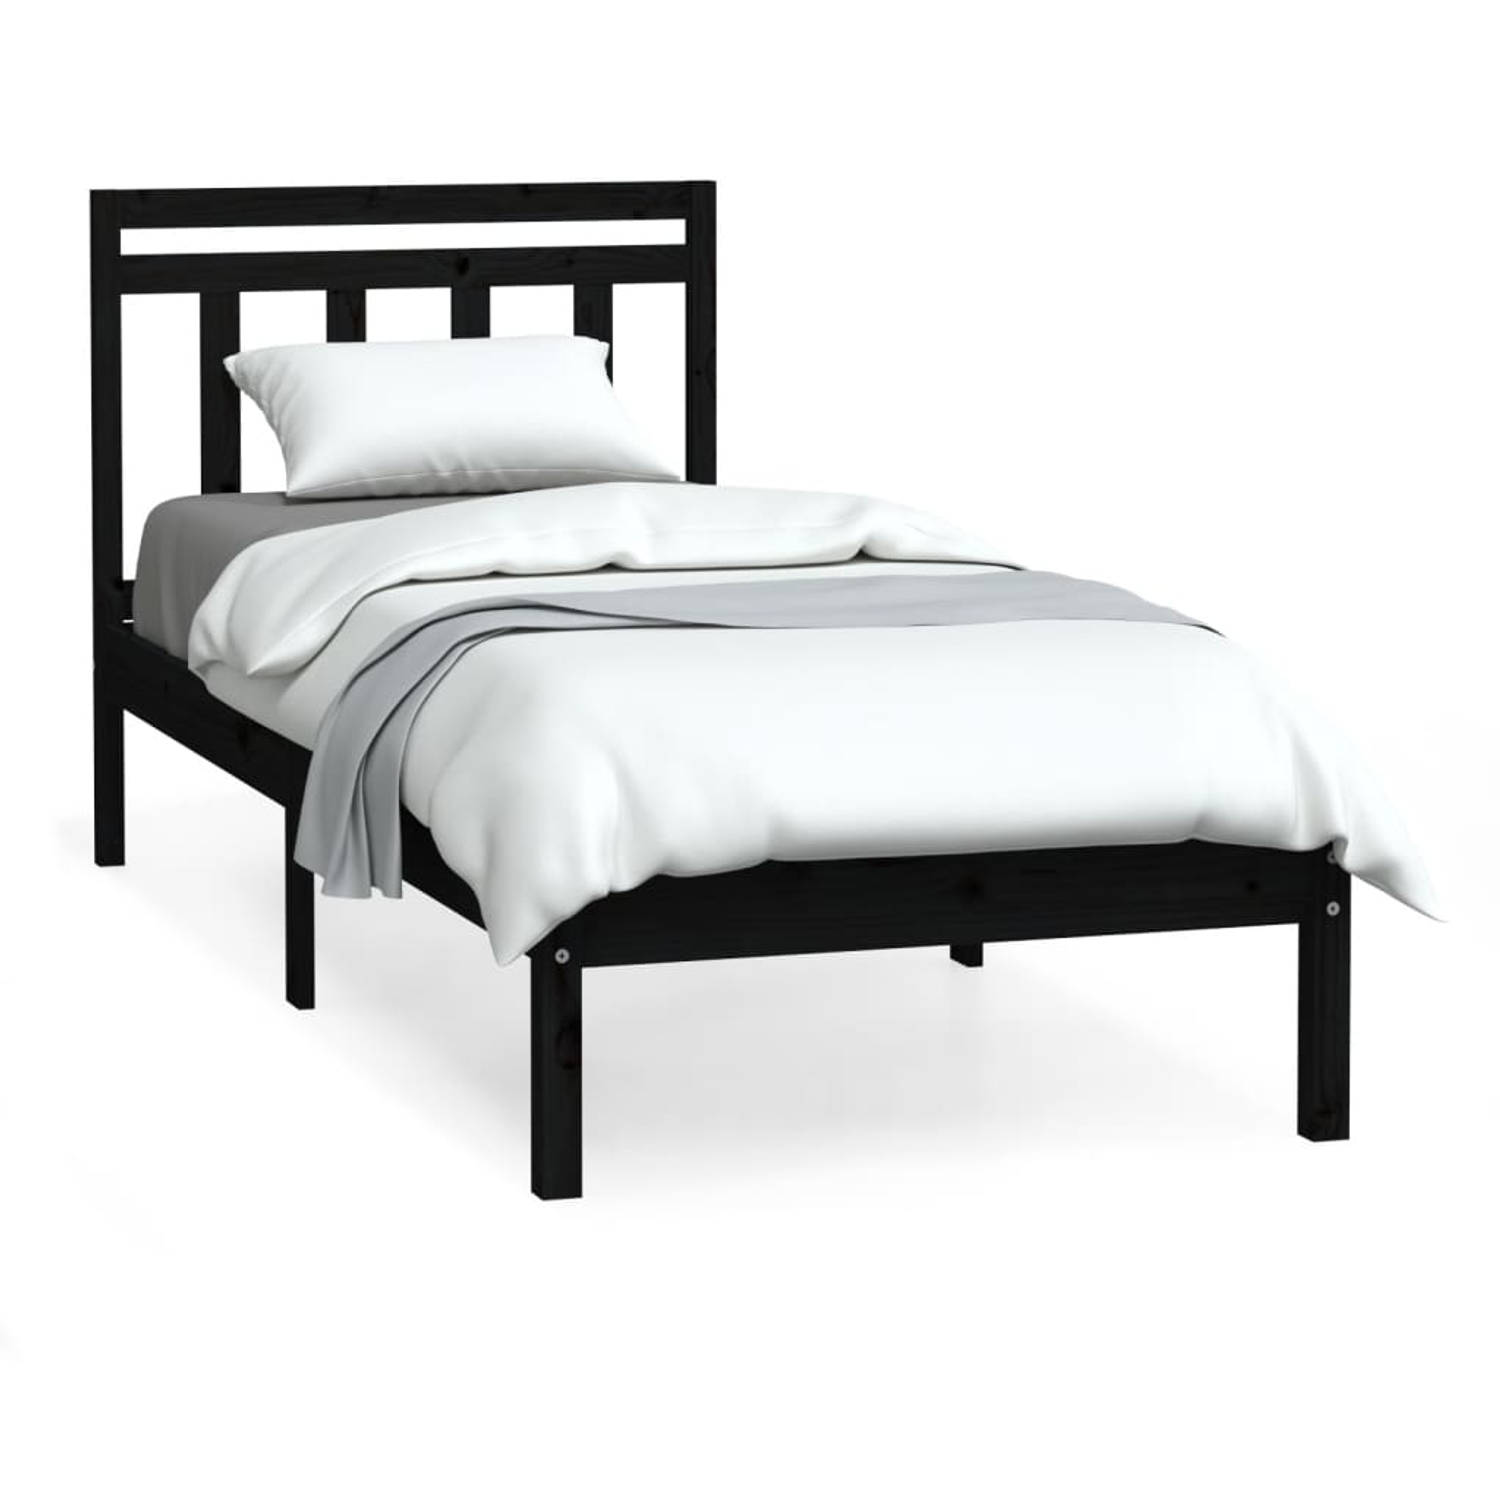 The Living Store Bedframe massief hout zwart 90x190 cm 3FT single - Bedframe - Bedframes - Eenpersoonsbed - Bed - Bedombouw - Frame - Bed Frame - Ledikant - Bedframe Met Hoofdeinde